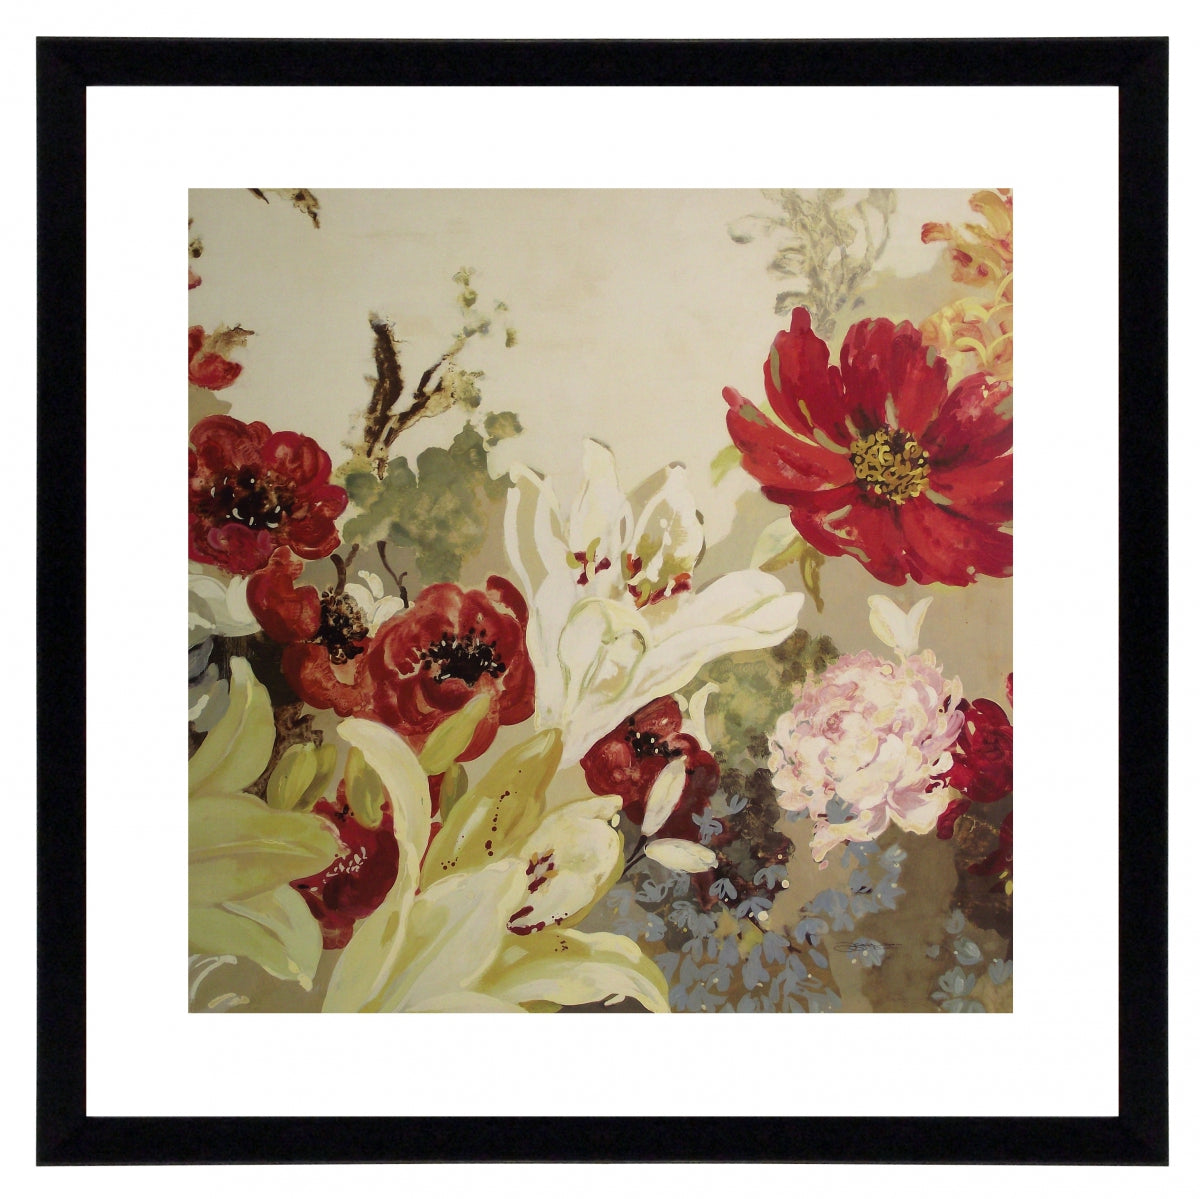 Obraz - Bukiet pastelowych kwiatów - reprodukcja A5856 oprawiona w ramę 60x60 cm. - Obrazy Reprodukcje Ramy | ergopaul.pl